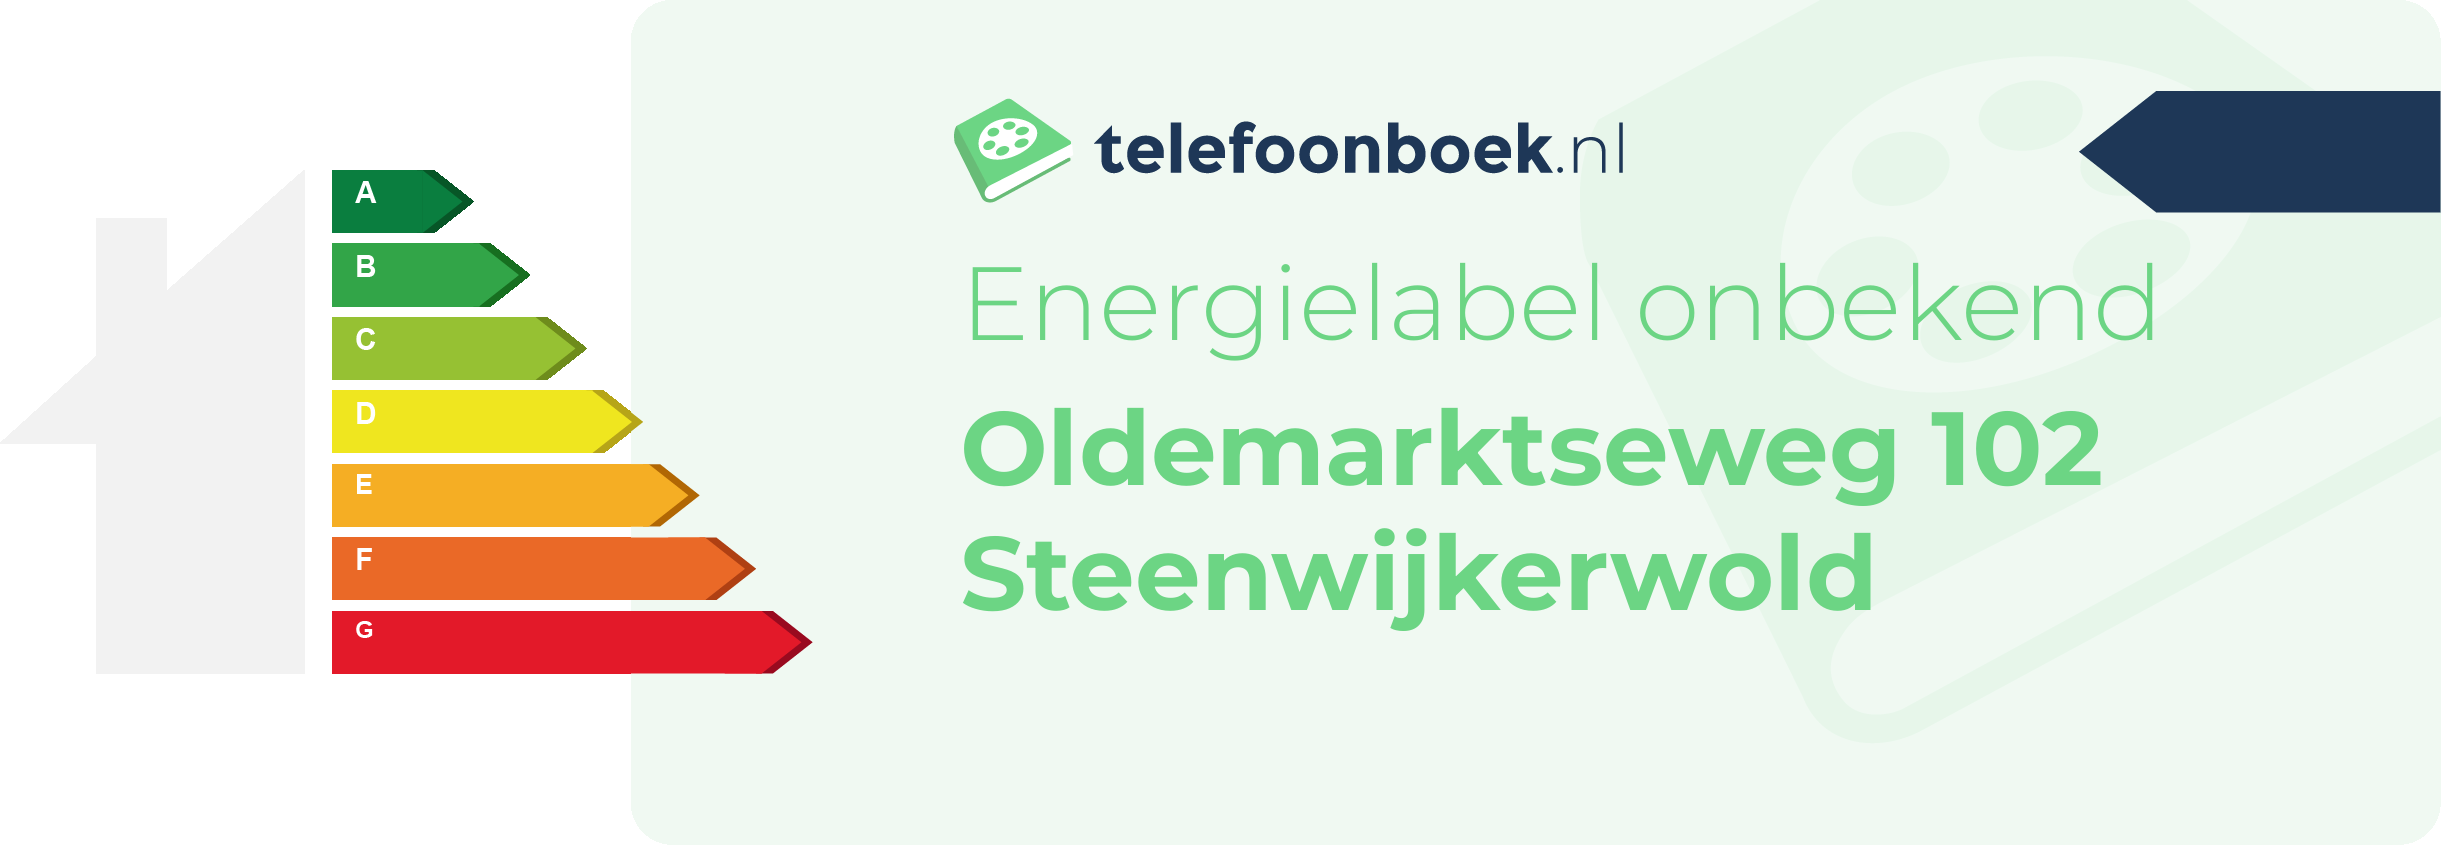 Energielabel Oldemarktseweg 102 Steenwijkerwold